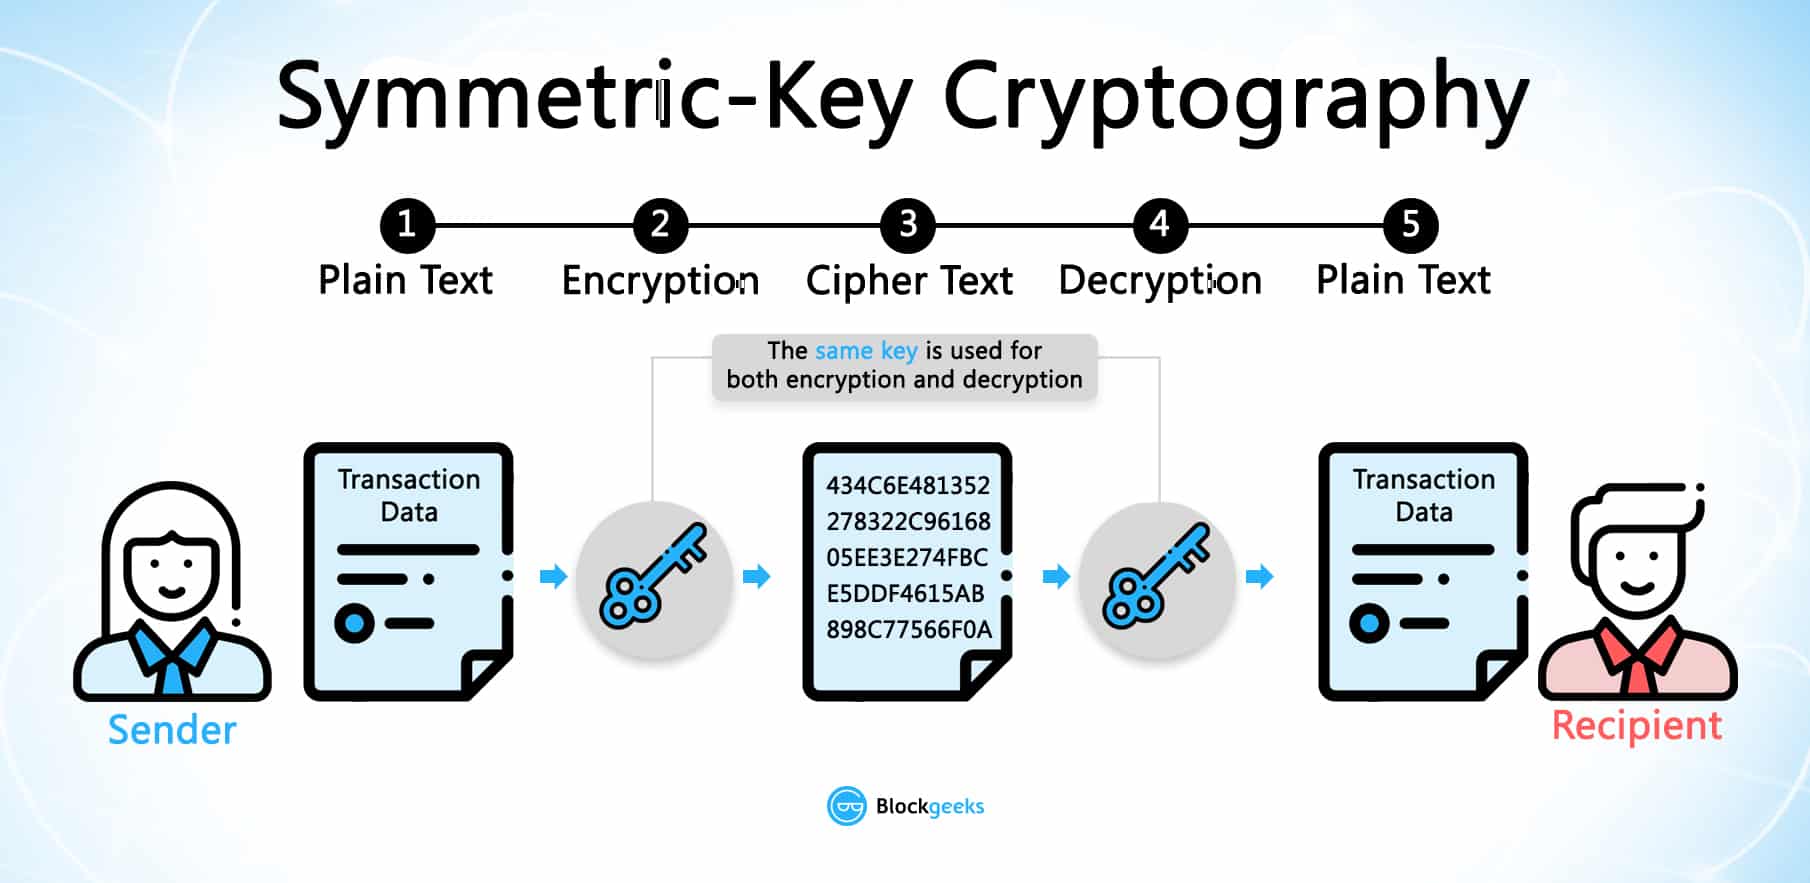 symmetricalkey cryptography